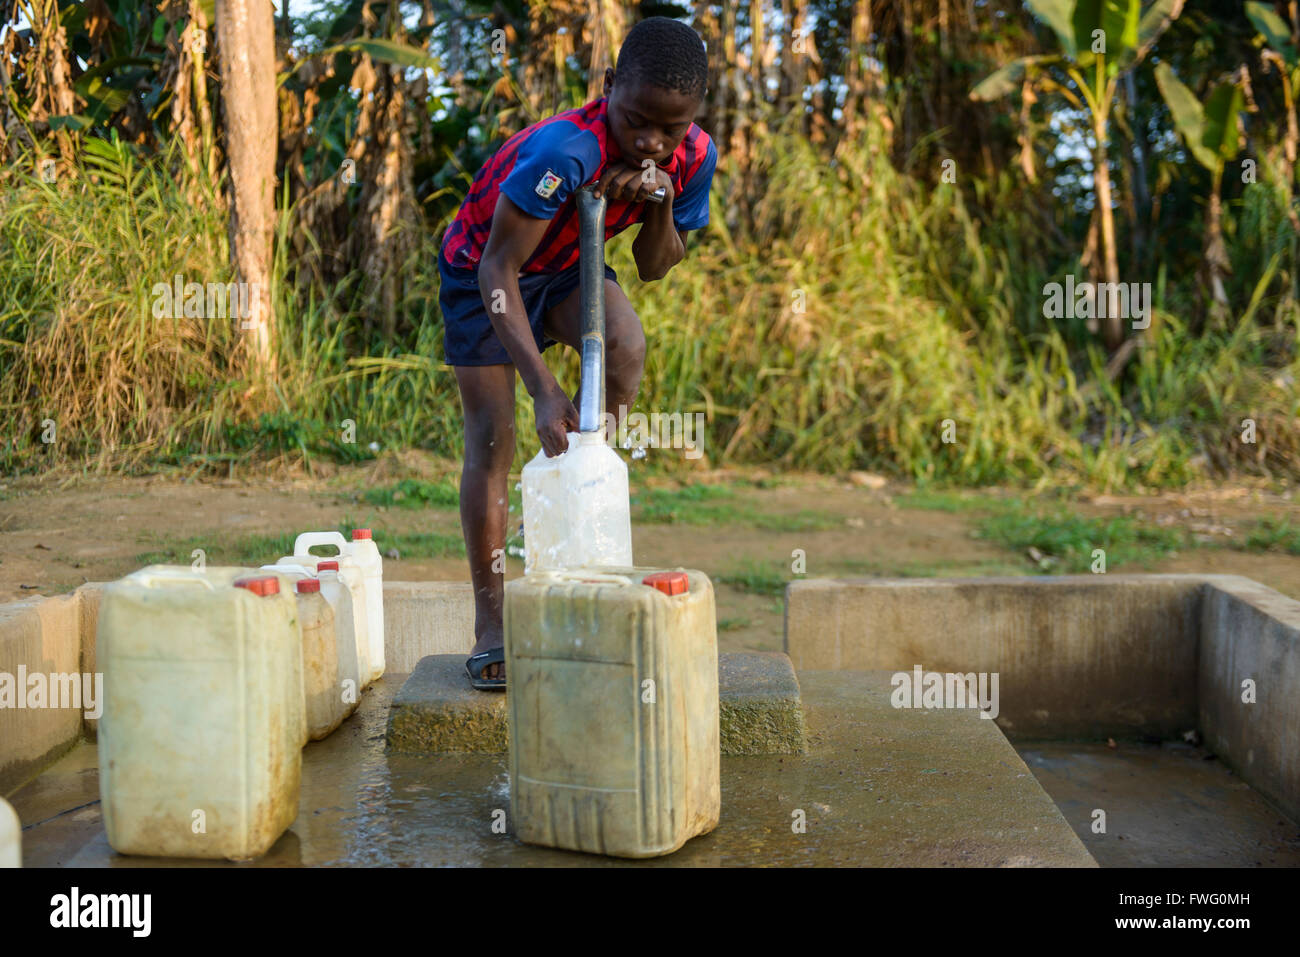 Garçon à la collecte de l'eau, le Gabon, l'Afrique Centrale Banque D'Images